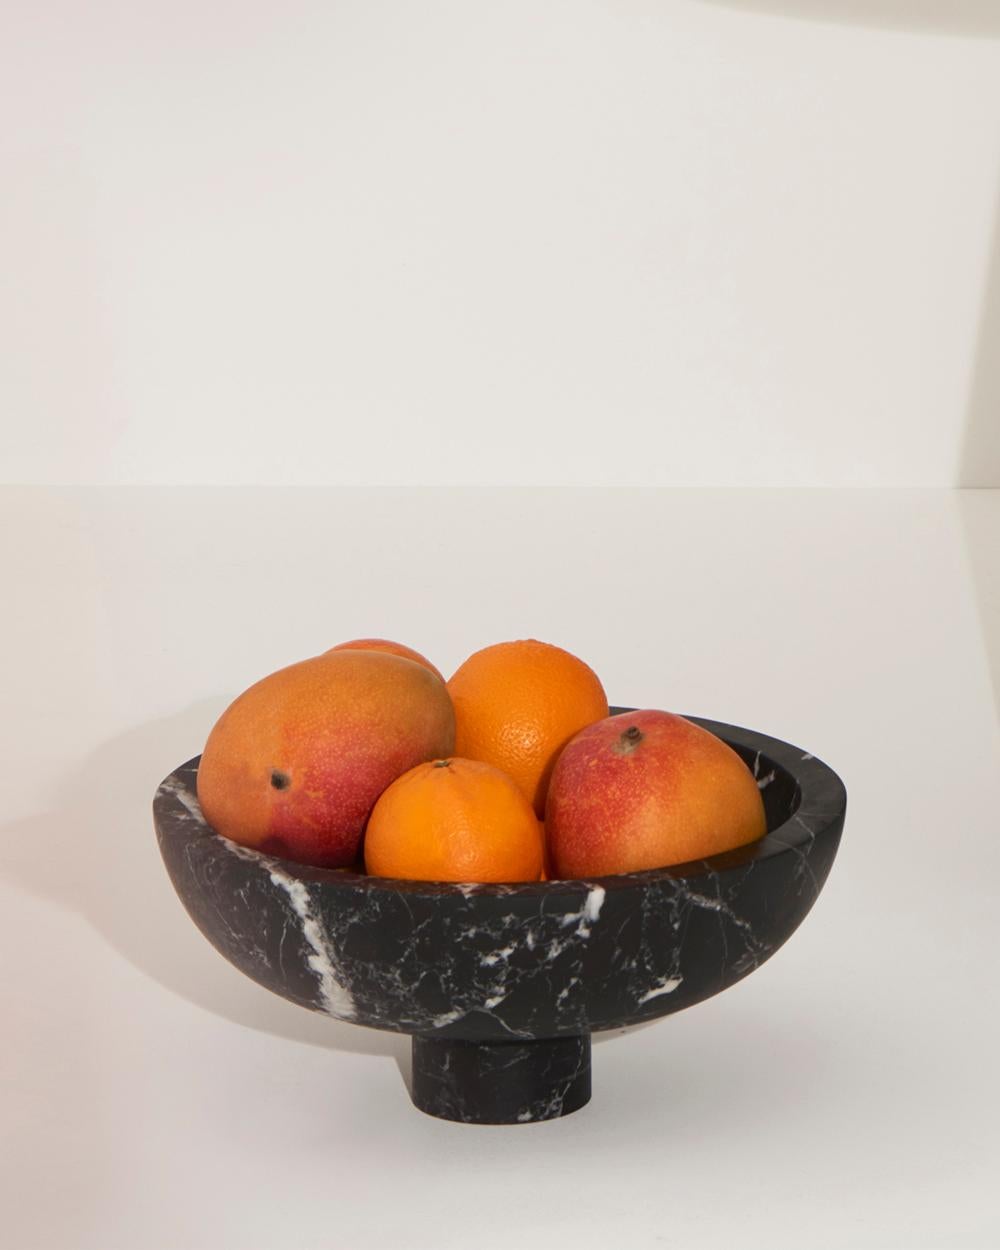 Coupe à fruits intérieure en marbre noir Marquinia, conçue par la designer de renommée internationale Karen Chekerdjian - elle est également disponible dans d'autres couleurs.
Elle fait partie de la Collection S'épanouir - tables et accessoires